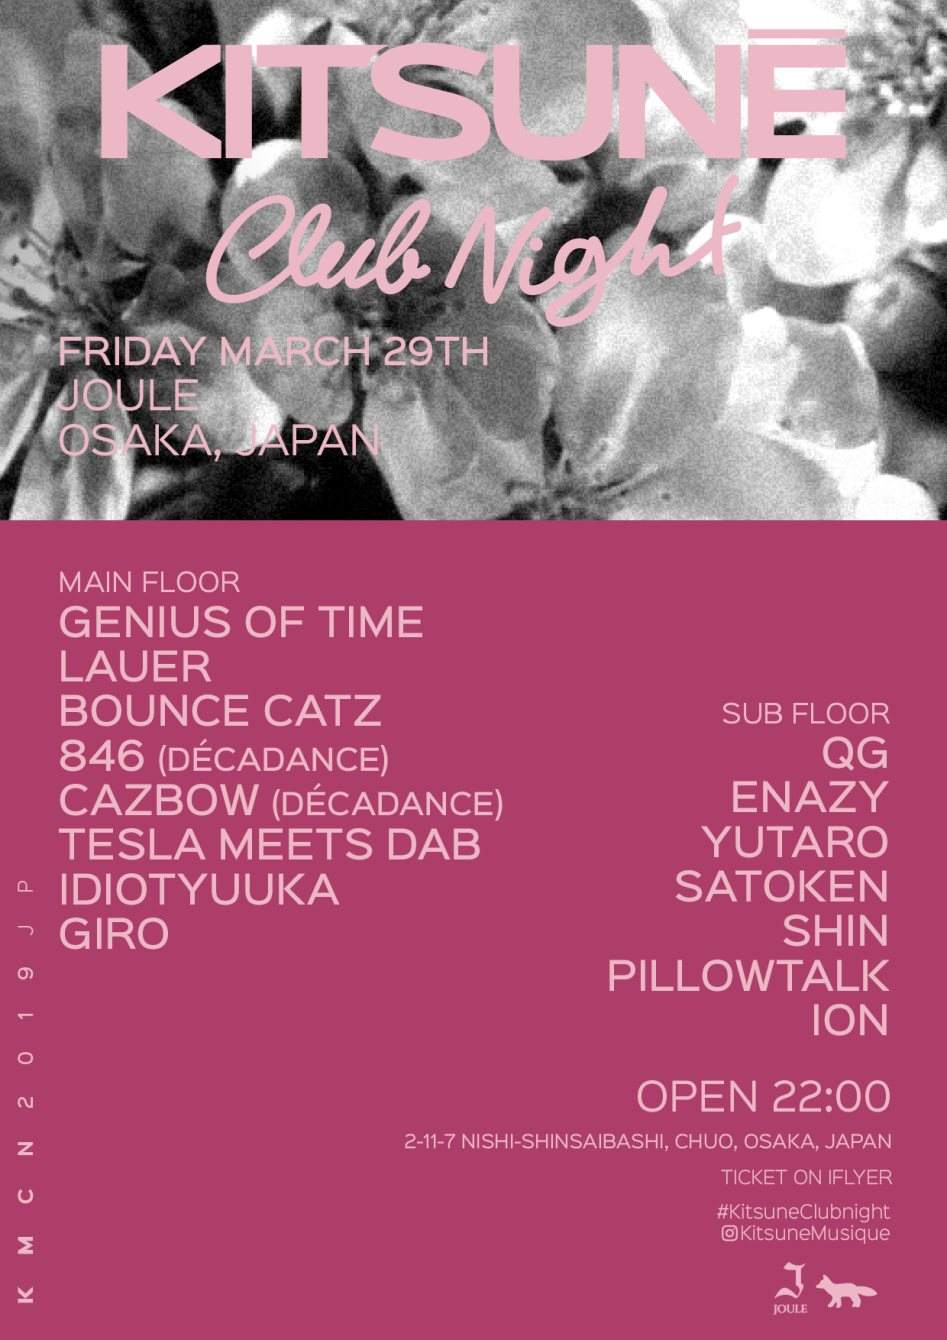 Kitsuné Club Night Sakura Party - Página frontal